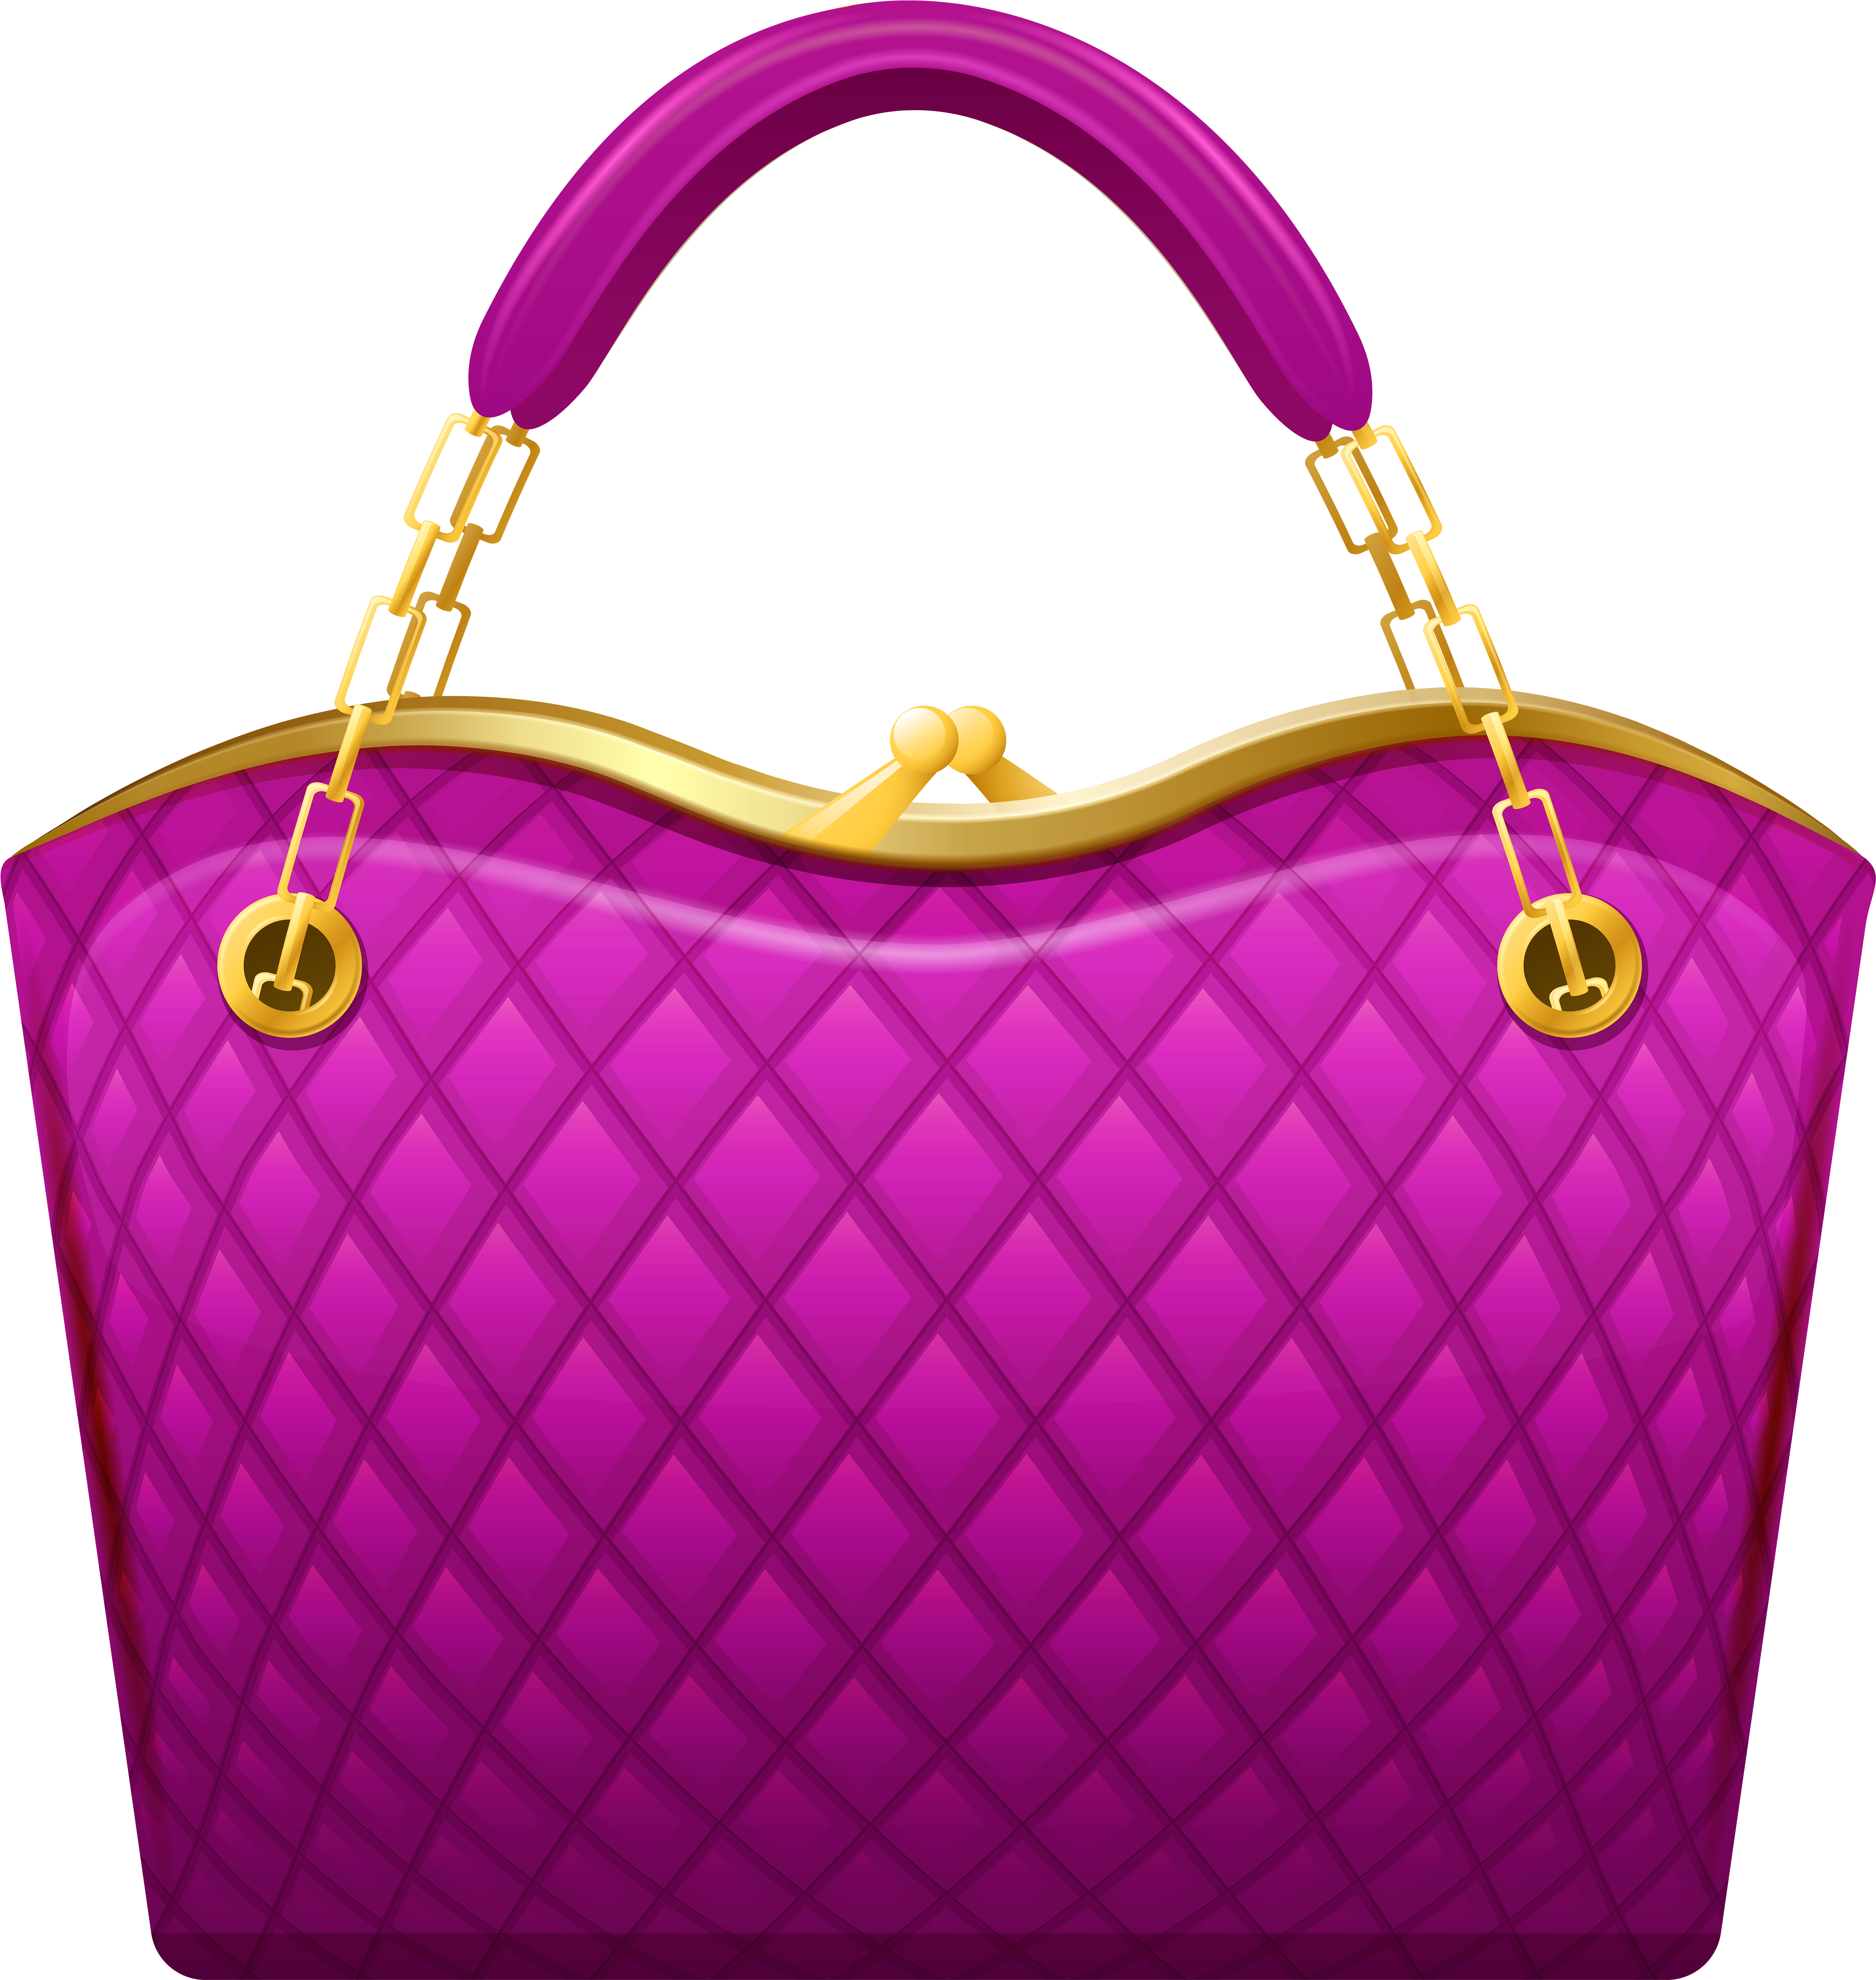 Pink Handbag Png Clip Art.